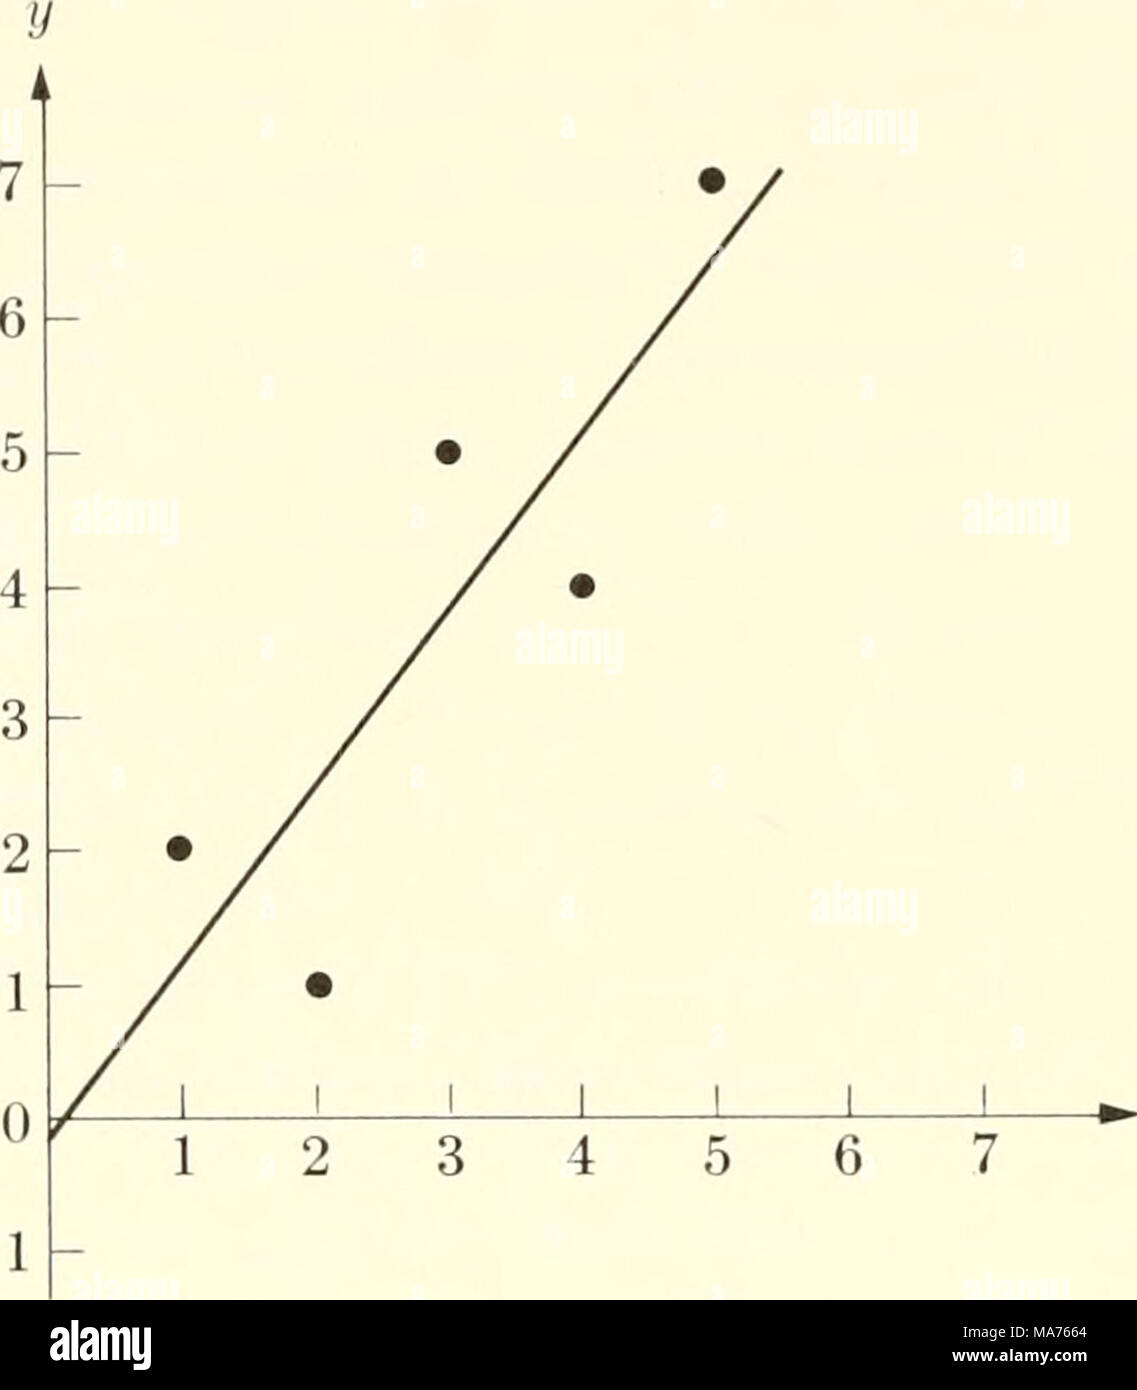 . Biophysique élémentaire : thèmes choisis . Fig. 7. Un terrain de certaines données expérimentales et une ligne qui est d'être testé par le critère du chi carré pour sa qualité de l'ajustement aux données. Le tracé des données et de la courbe théorique sont indiquées en Fig. 7. La courbe théorique a été calculée par les méthodes d'être traités dans une section ultérieure. L'équation est myth  = -0.1  + 1.3.r. Les valeurs de yexp yth et à des valeurs expérimentales de x sont x  = 1 2 3 4 5 2/e  = 1,2 2,5 3,8 5,1 6,4 z/exp  =21547 les déviations sont, pour la ligne droite, (2 - 1.2), (1 - 2.5), (5 - - 3.8), (4 - - 5.1), et (7 - - 6.4). Leur c Banque D'Images